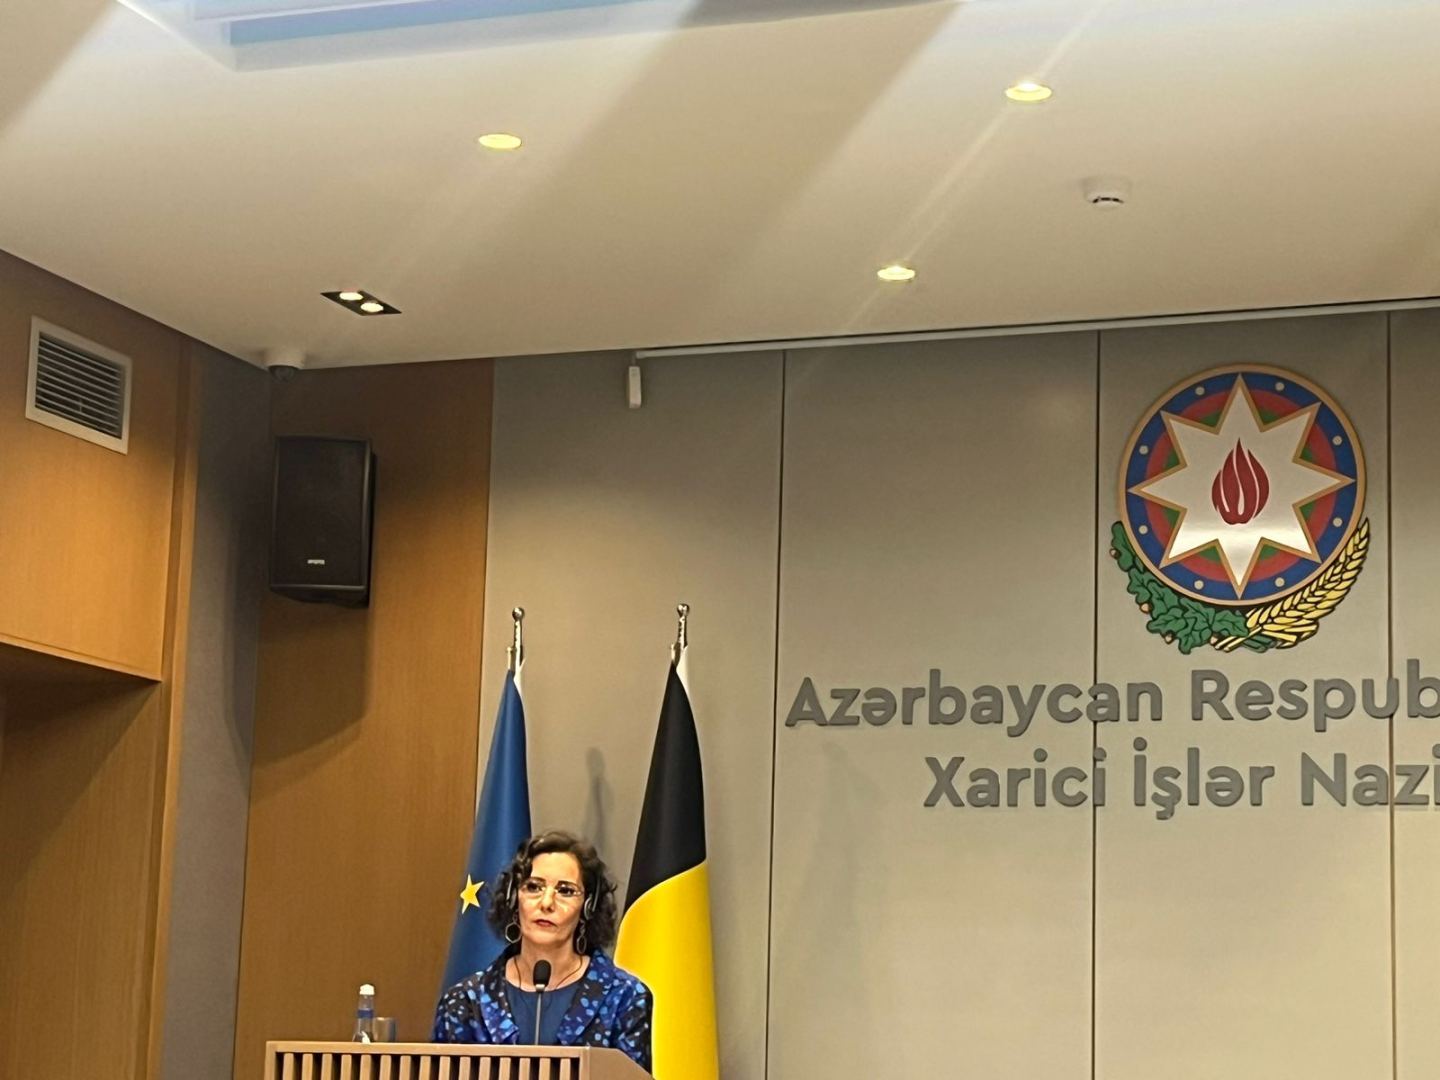 Бельгия стремится к углублению связей с Азербайджаном - Хаджа Лабиб